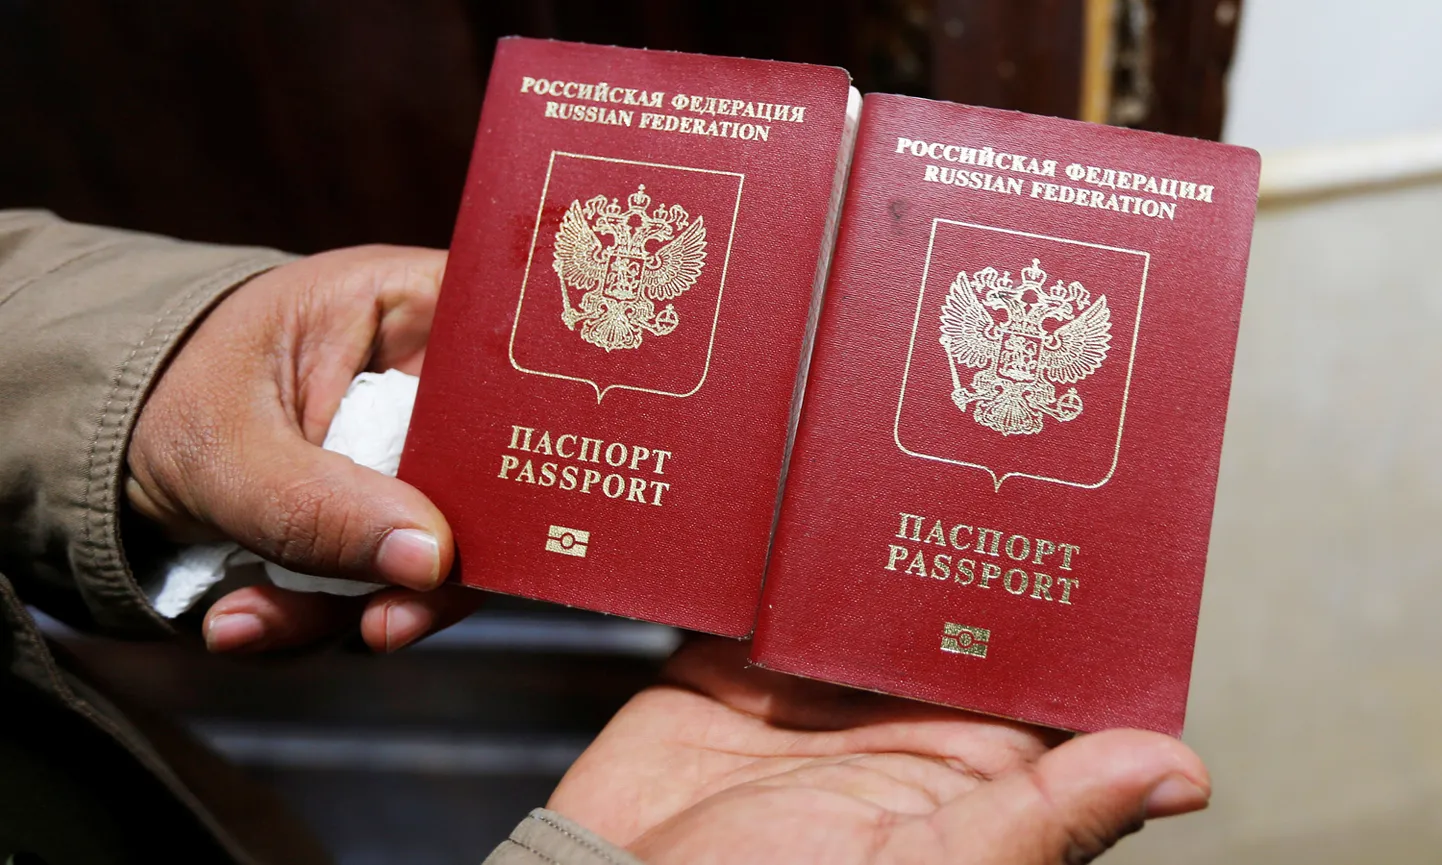 Krievijas pase. Ilustratīvs attēls